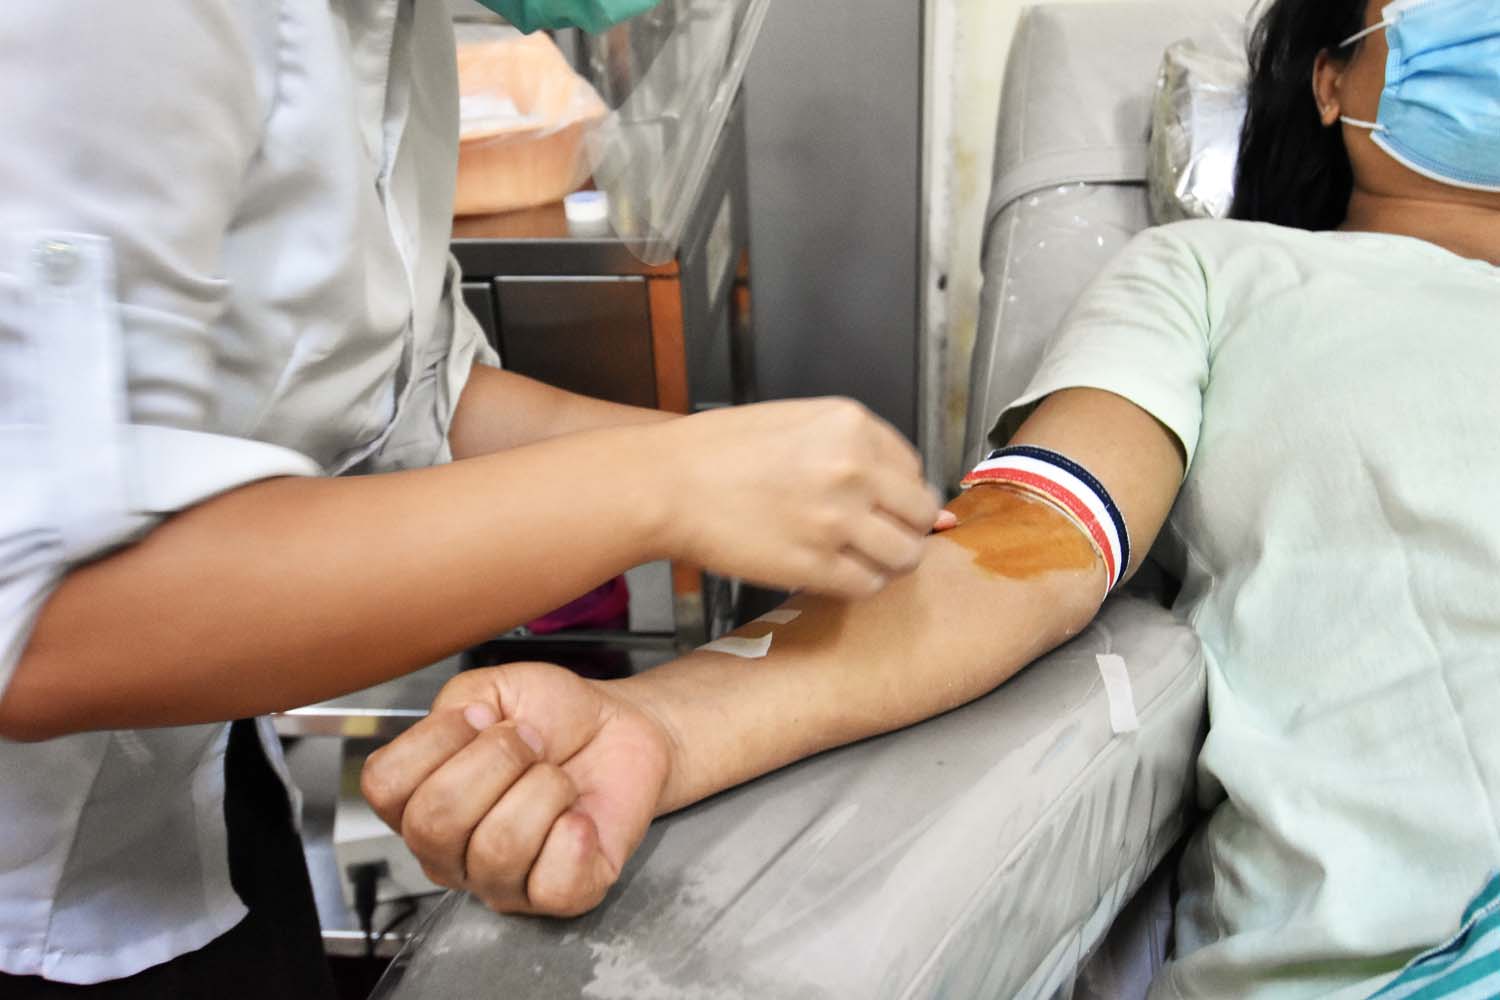 ကိုဗစ်-၁၉ရောဂါ ကူးစက်ခံရမည်စိုး၍ သွေးလှူရှင်အများအပြားသည် အမျိုးသားသွေးဌာနသို့ ရောက်မလာကြတော့ရာ သွေးလိုအပ်မှုကဆက်ရှိနေသည် ။ (စတိဗ်တစ်ခ်နာ | ဖရွန်တီးယားမြန်မာ)